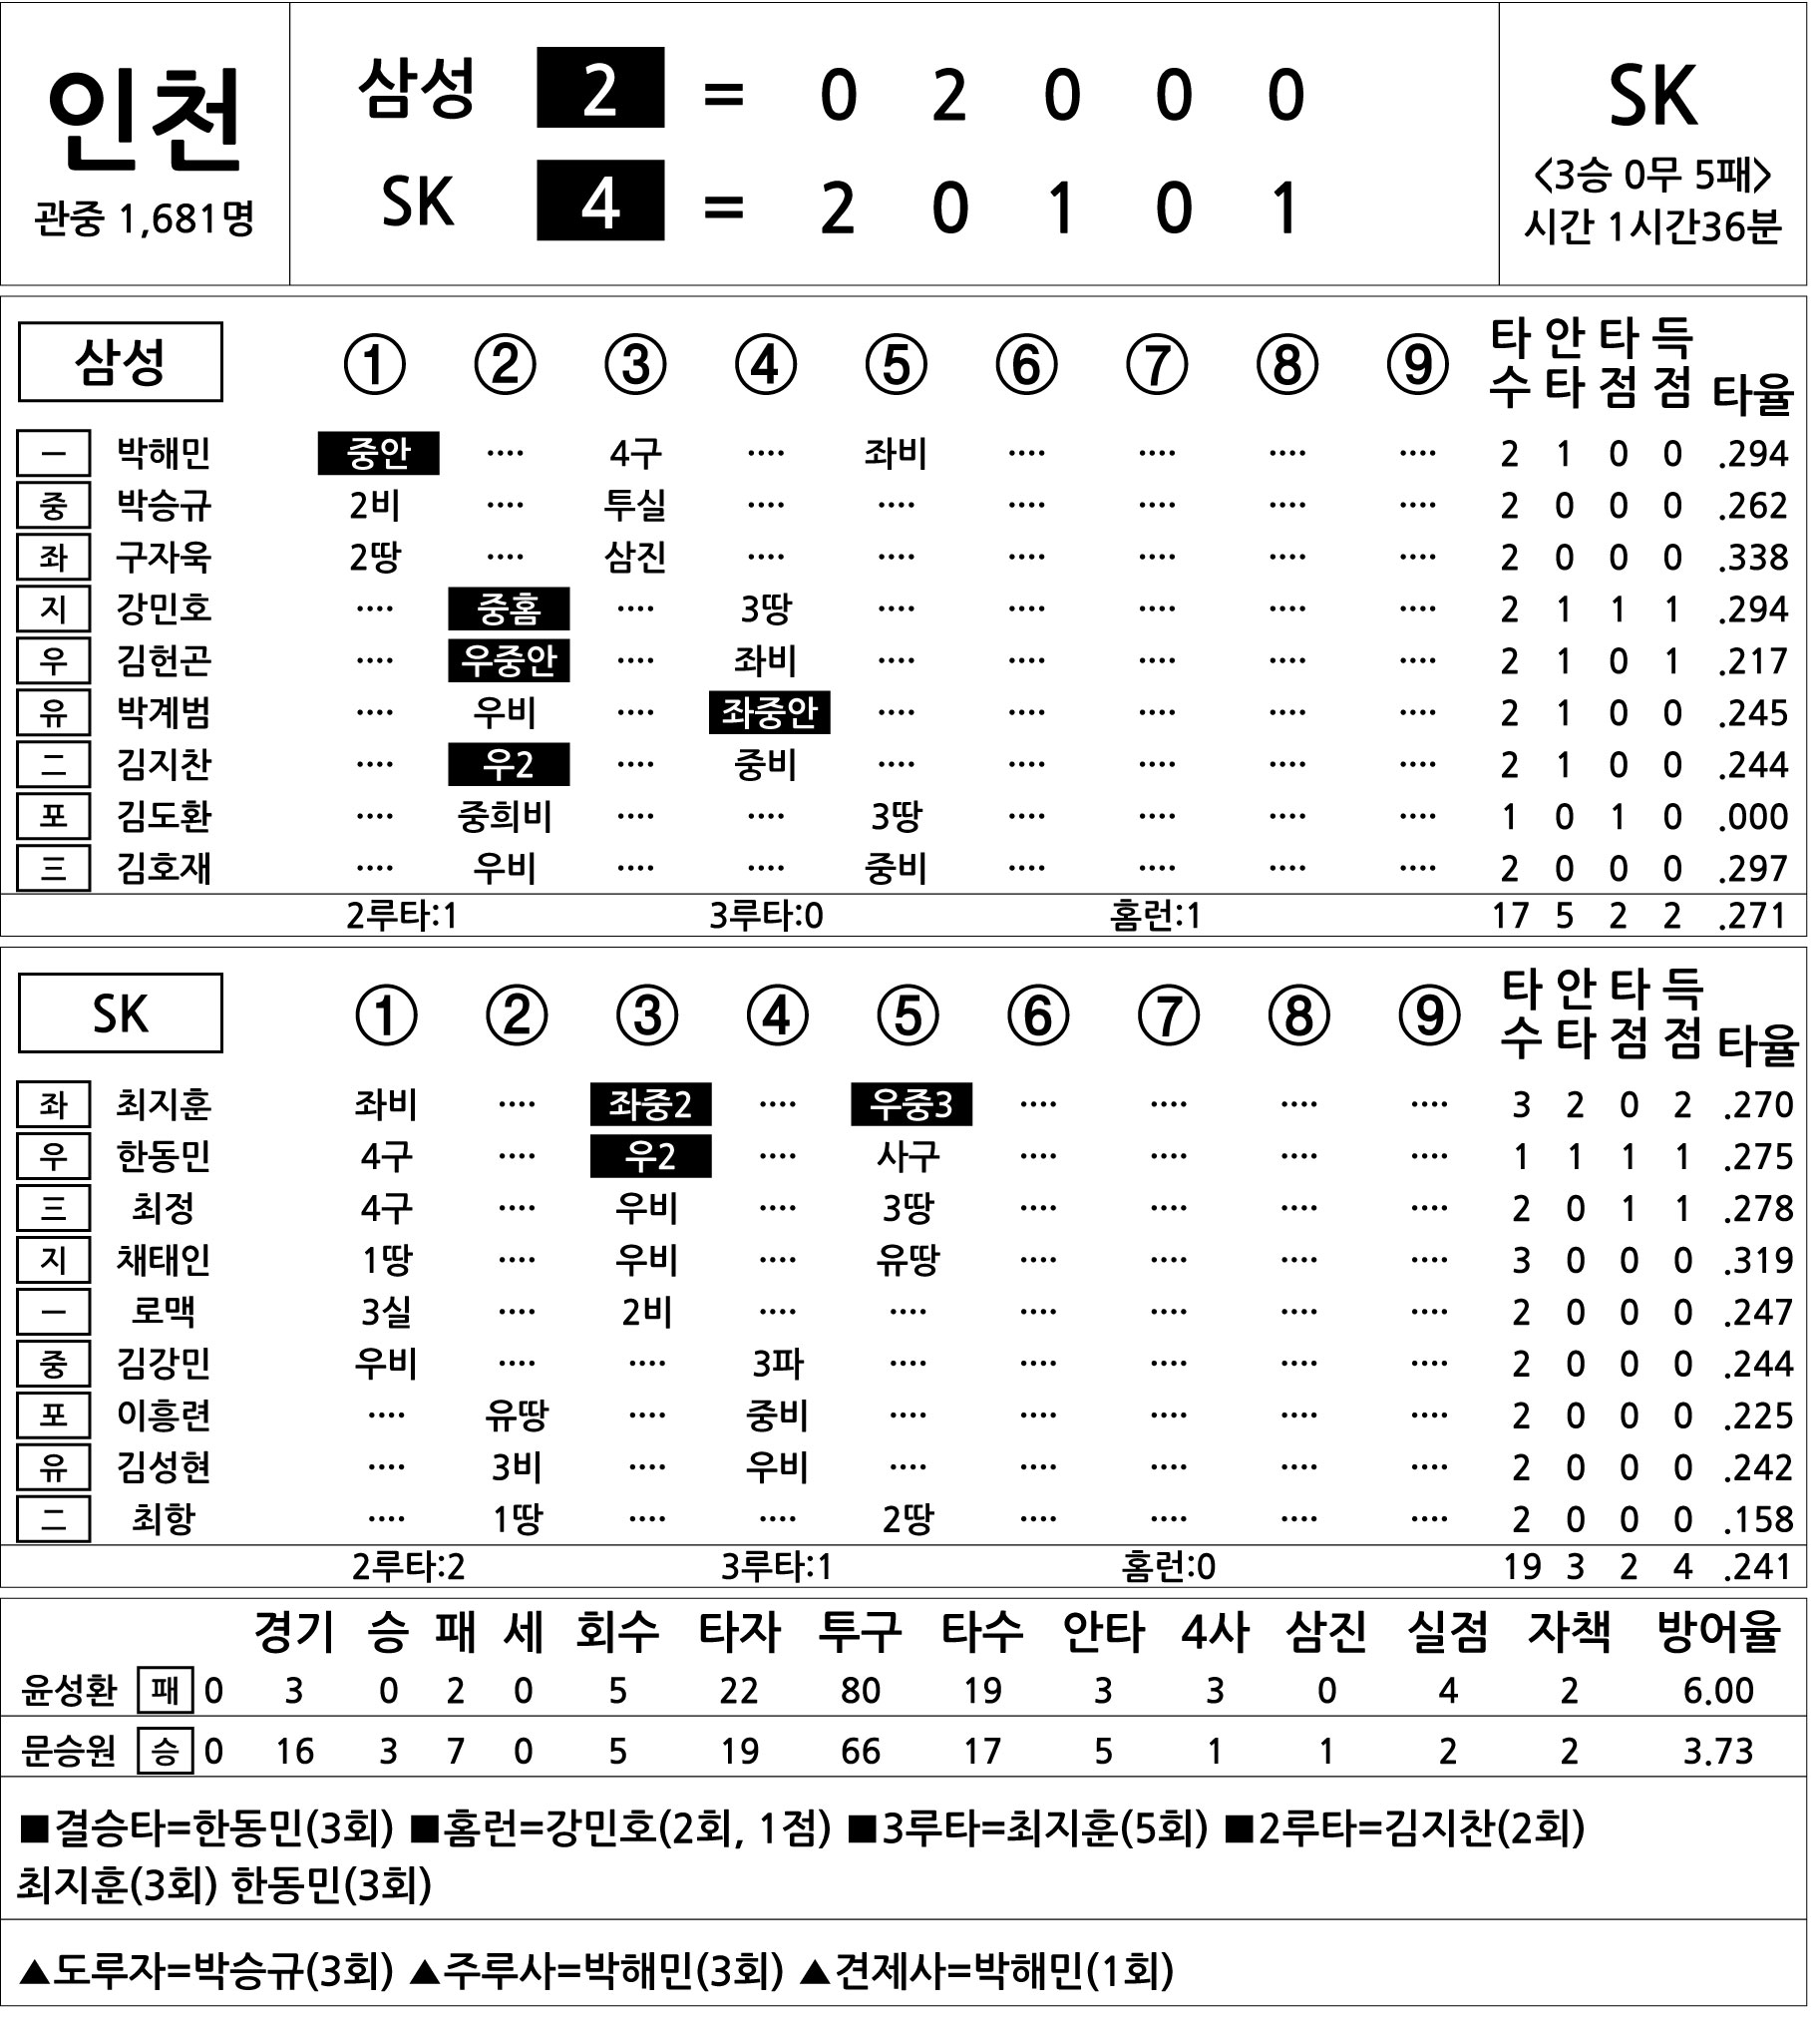  삼성 vs SK (8월 8일)